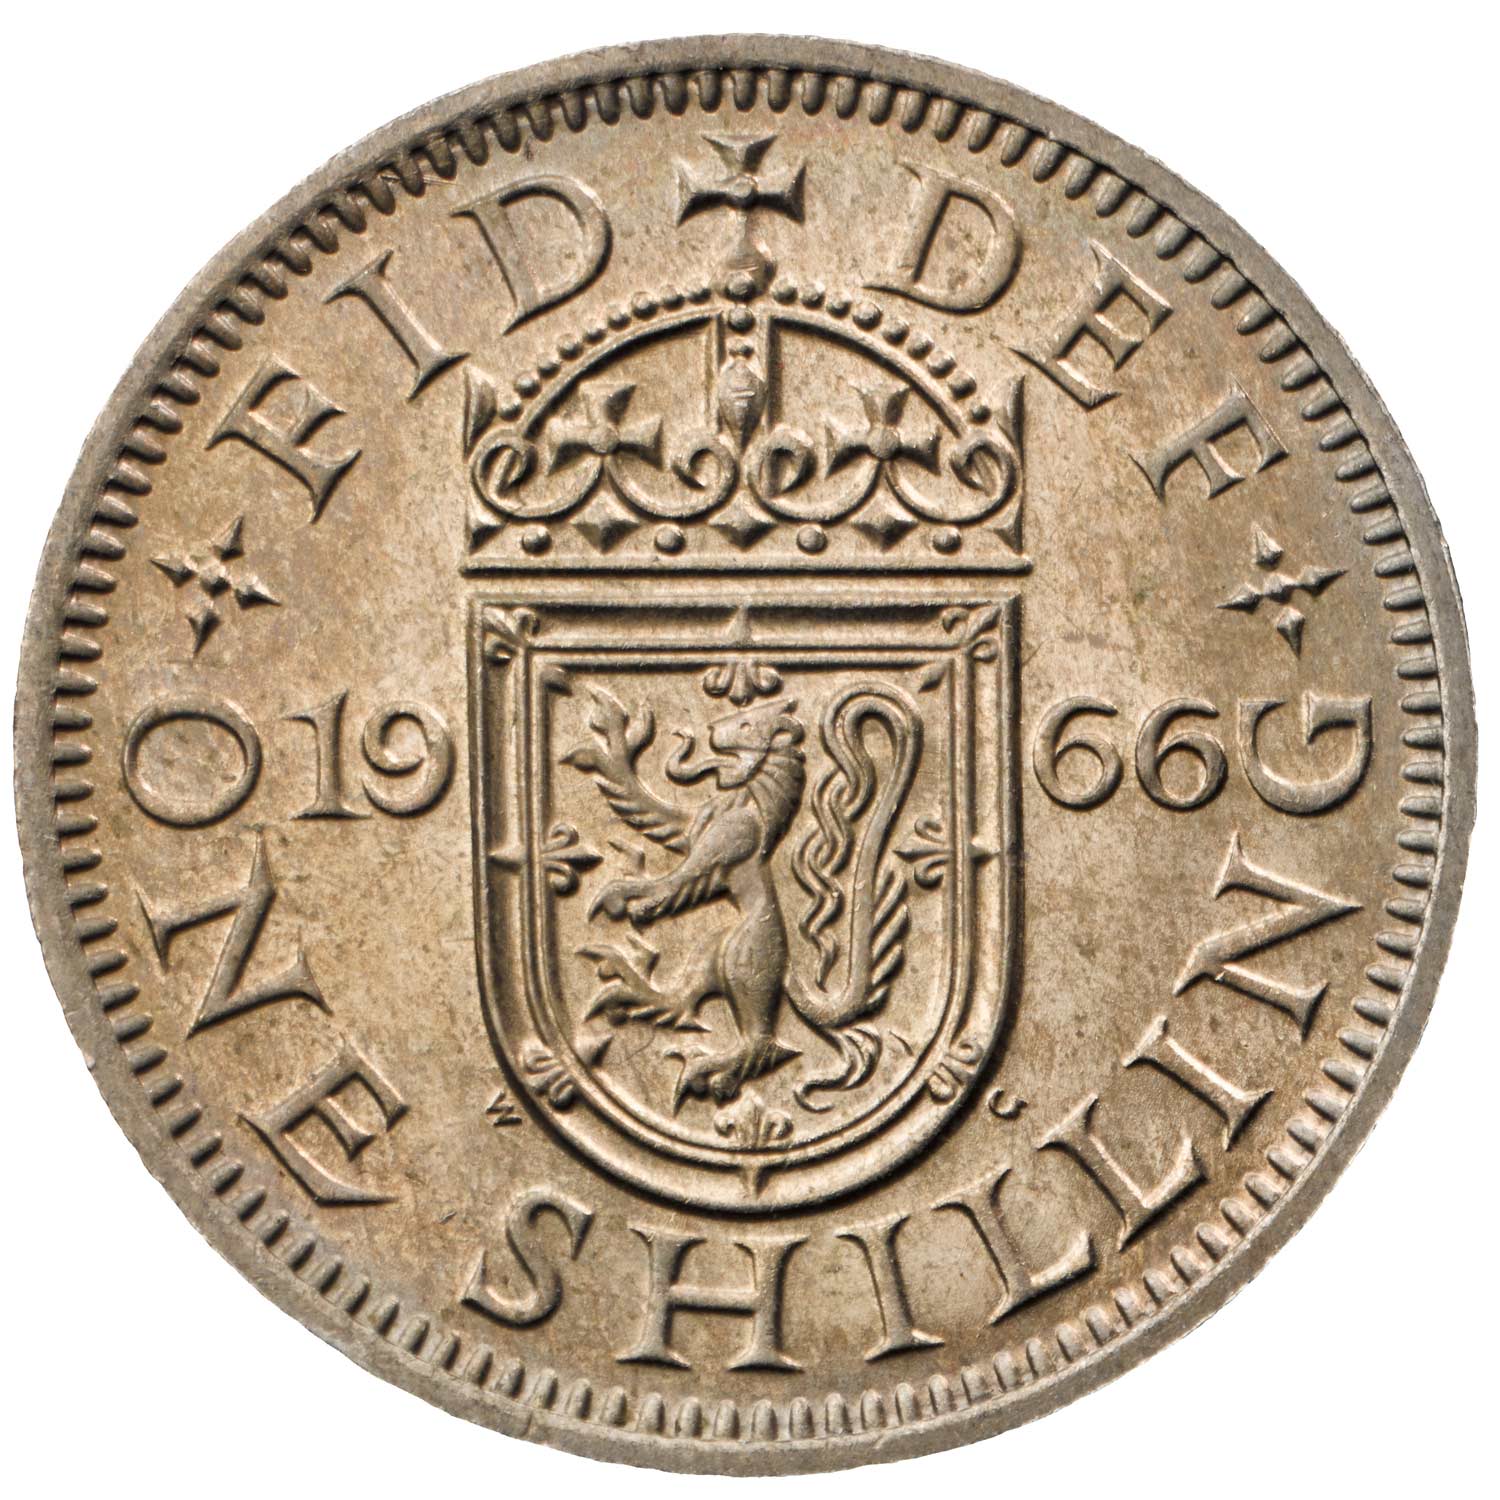 hise2966s-queen-elizabeth-ii-1966-shilling-reverse.jpg